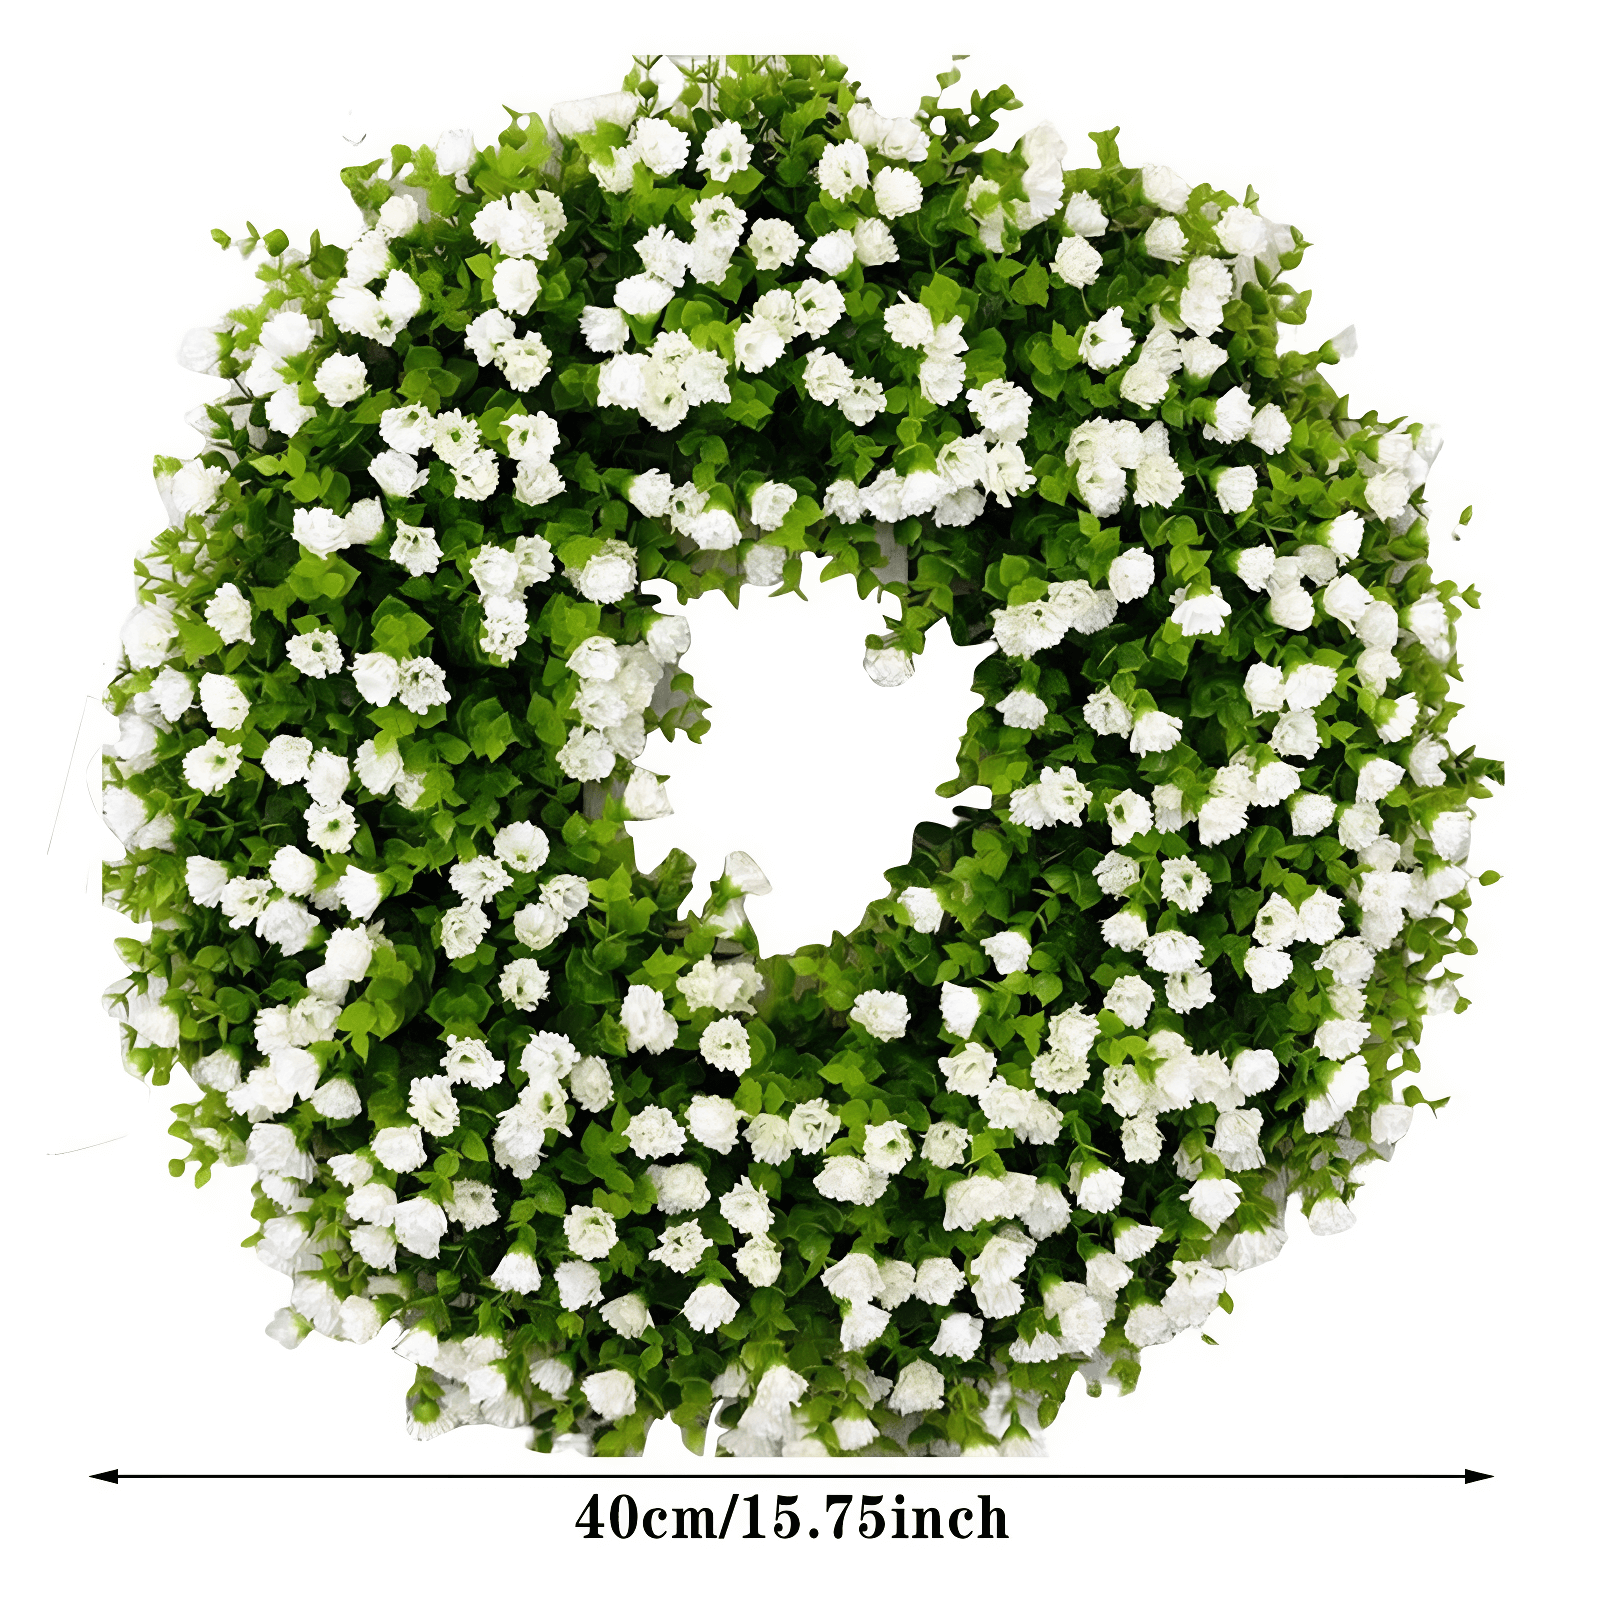 faithful wishes wreath size chart